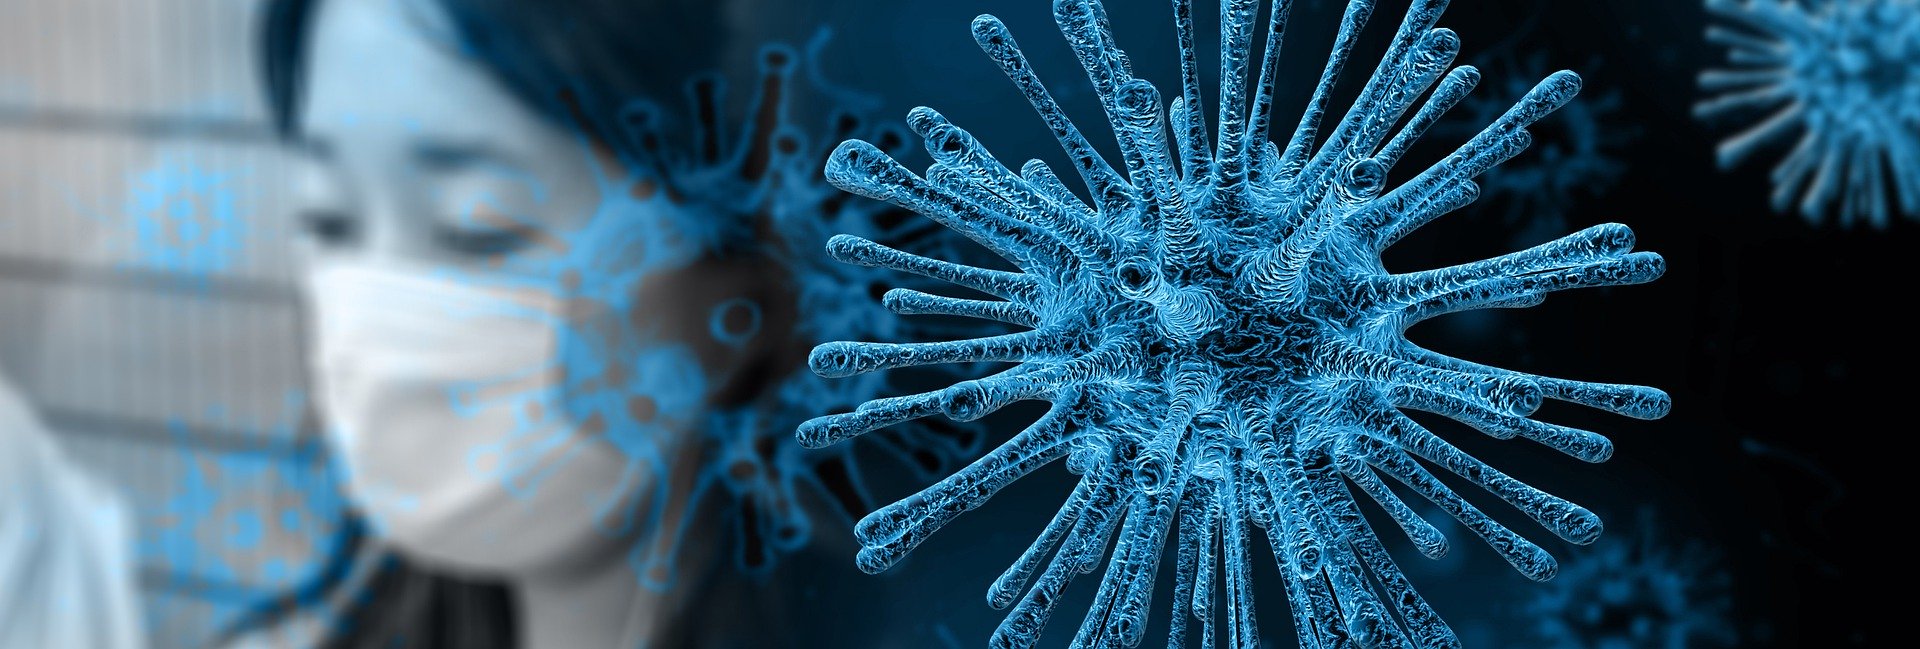 Coronavirus: Daily News and Updates